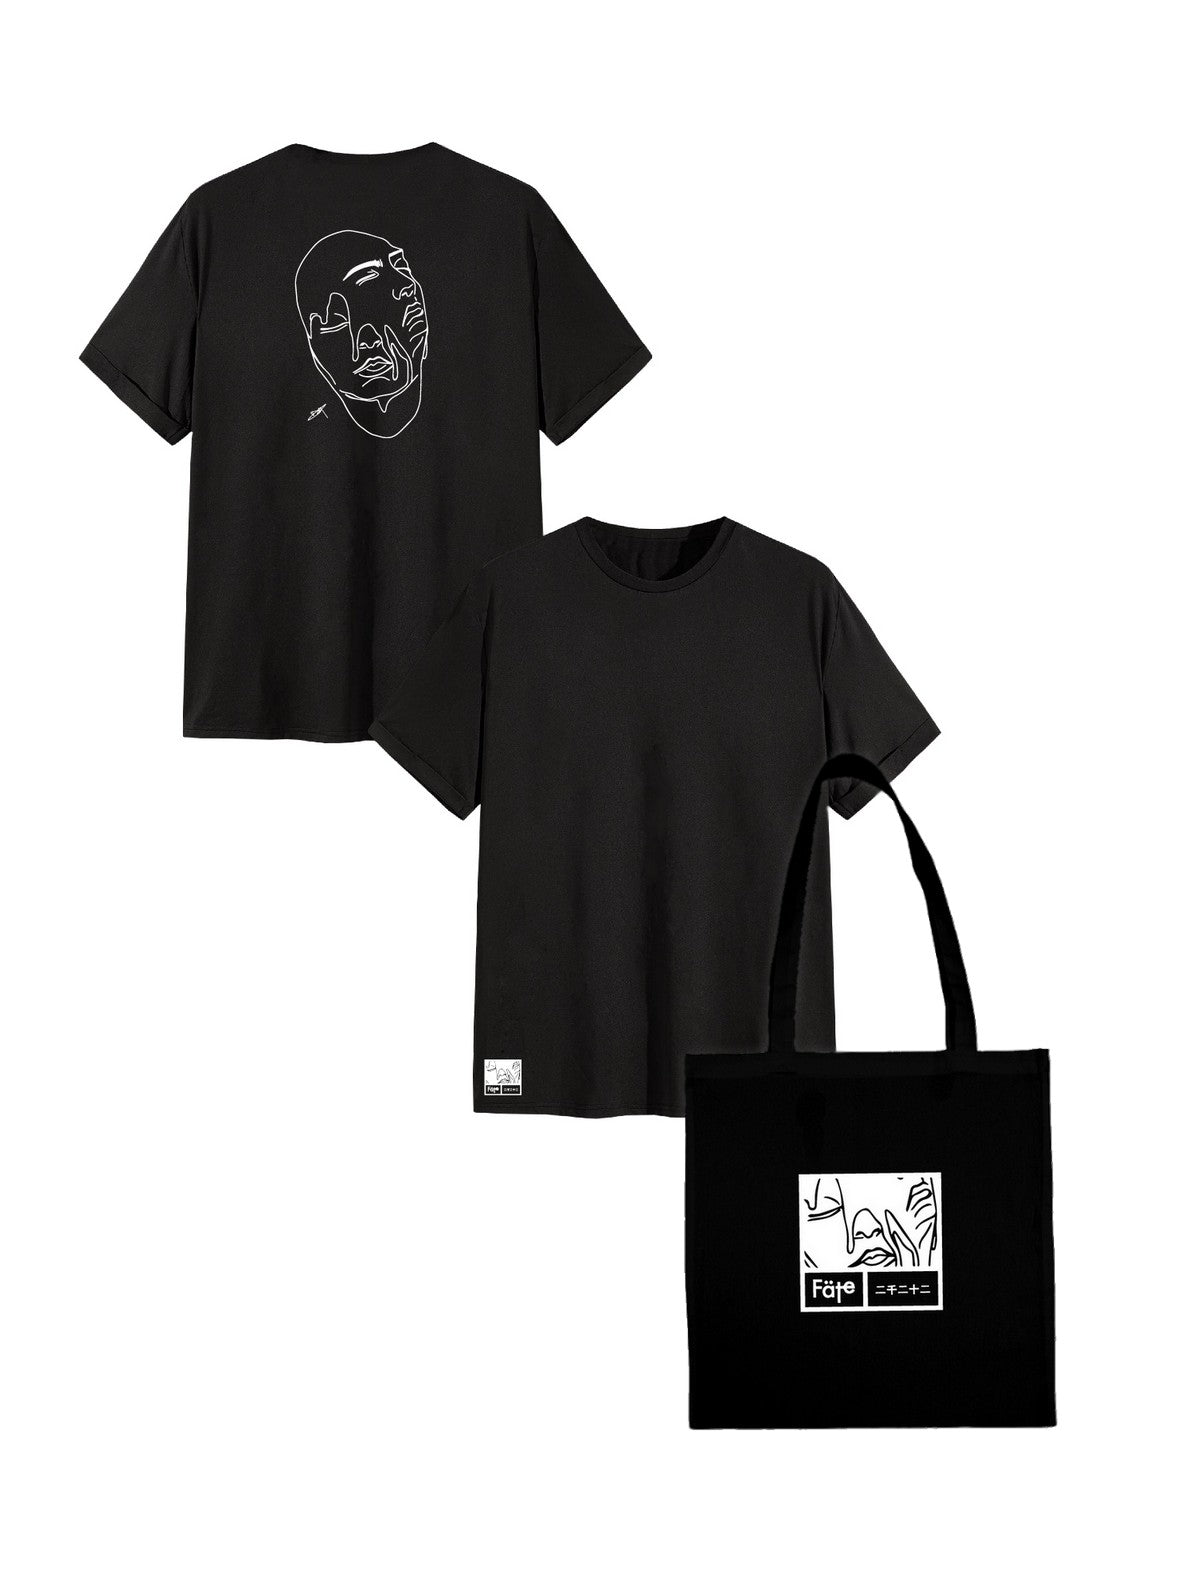 Pack T shirt et tote bag Black edition par Celia.dray